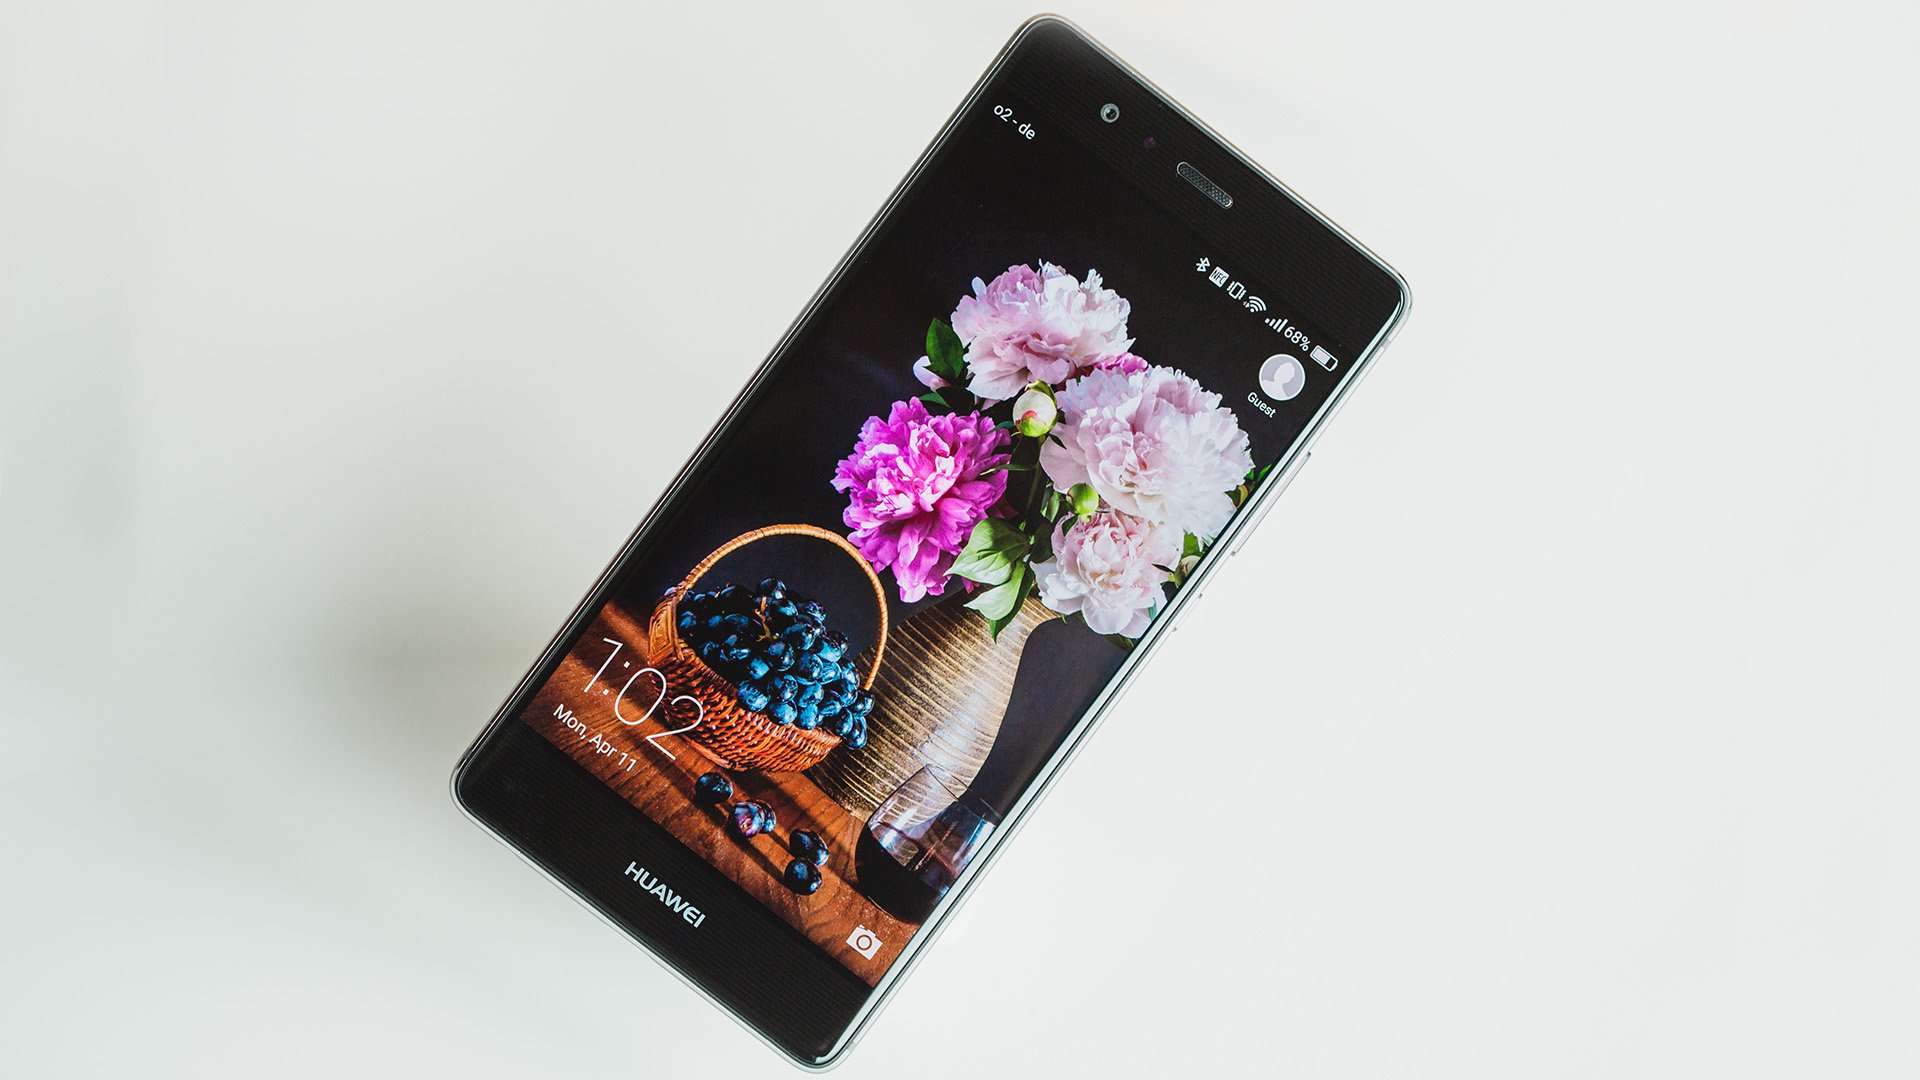 Huawei P9 Review - Huawei P9 Lite Black Review , HD Wallpaper & Backgrounds